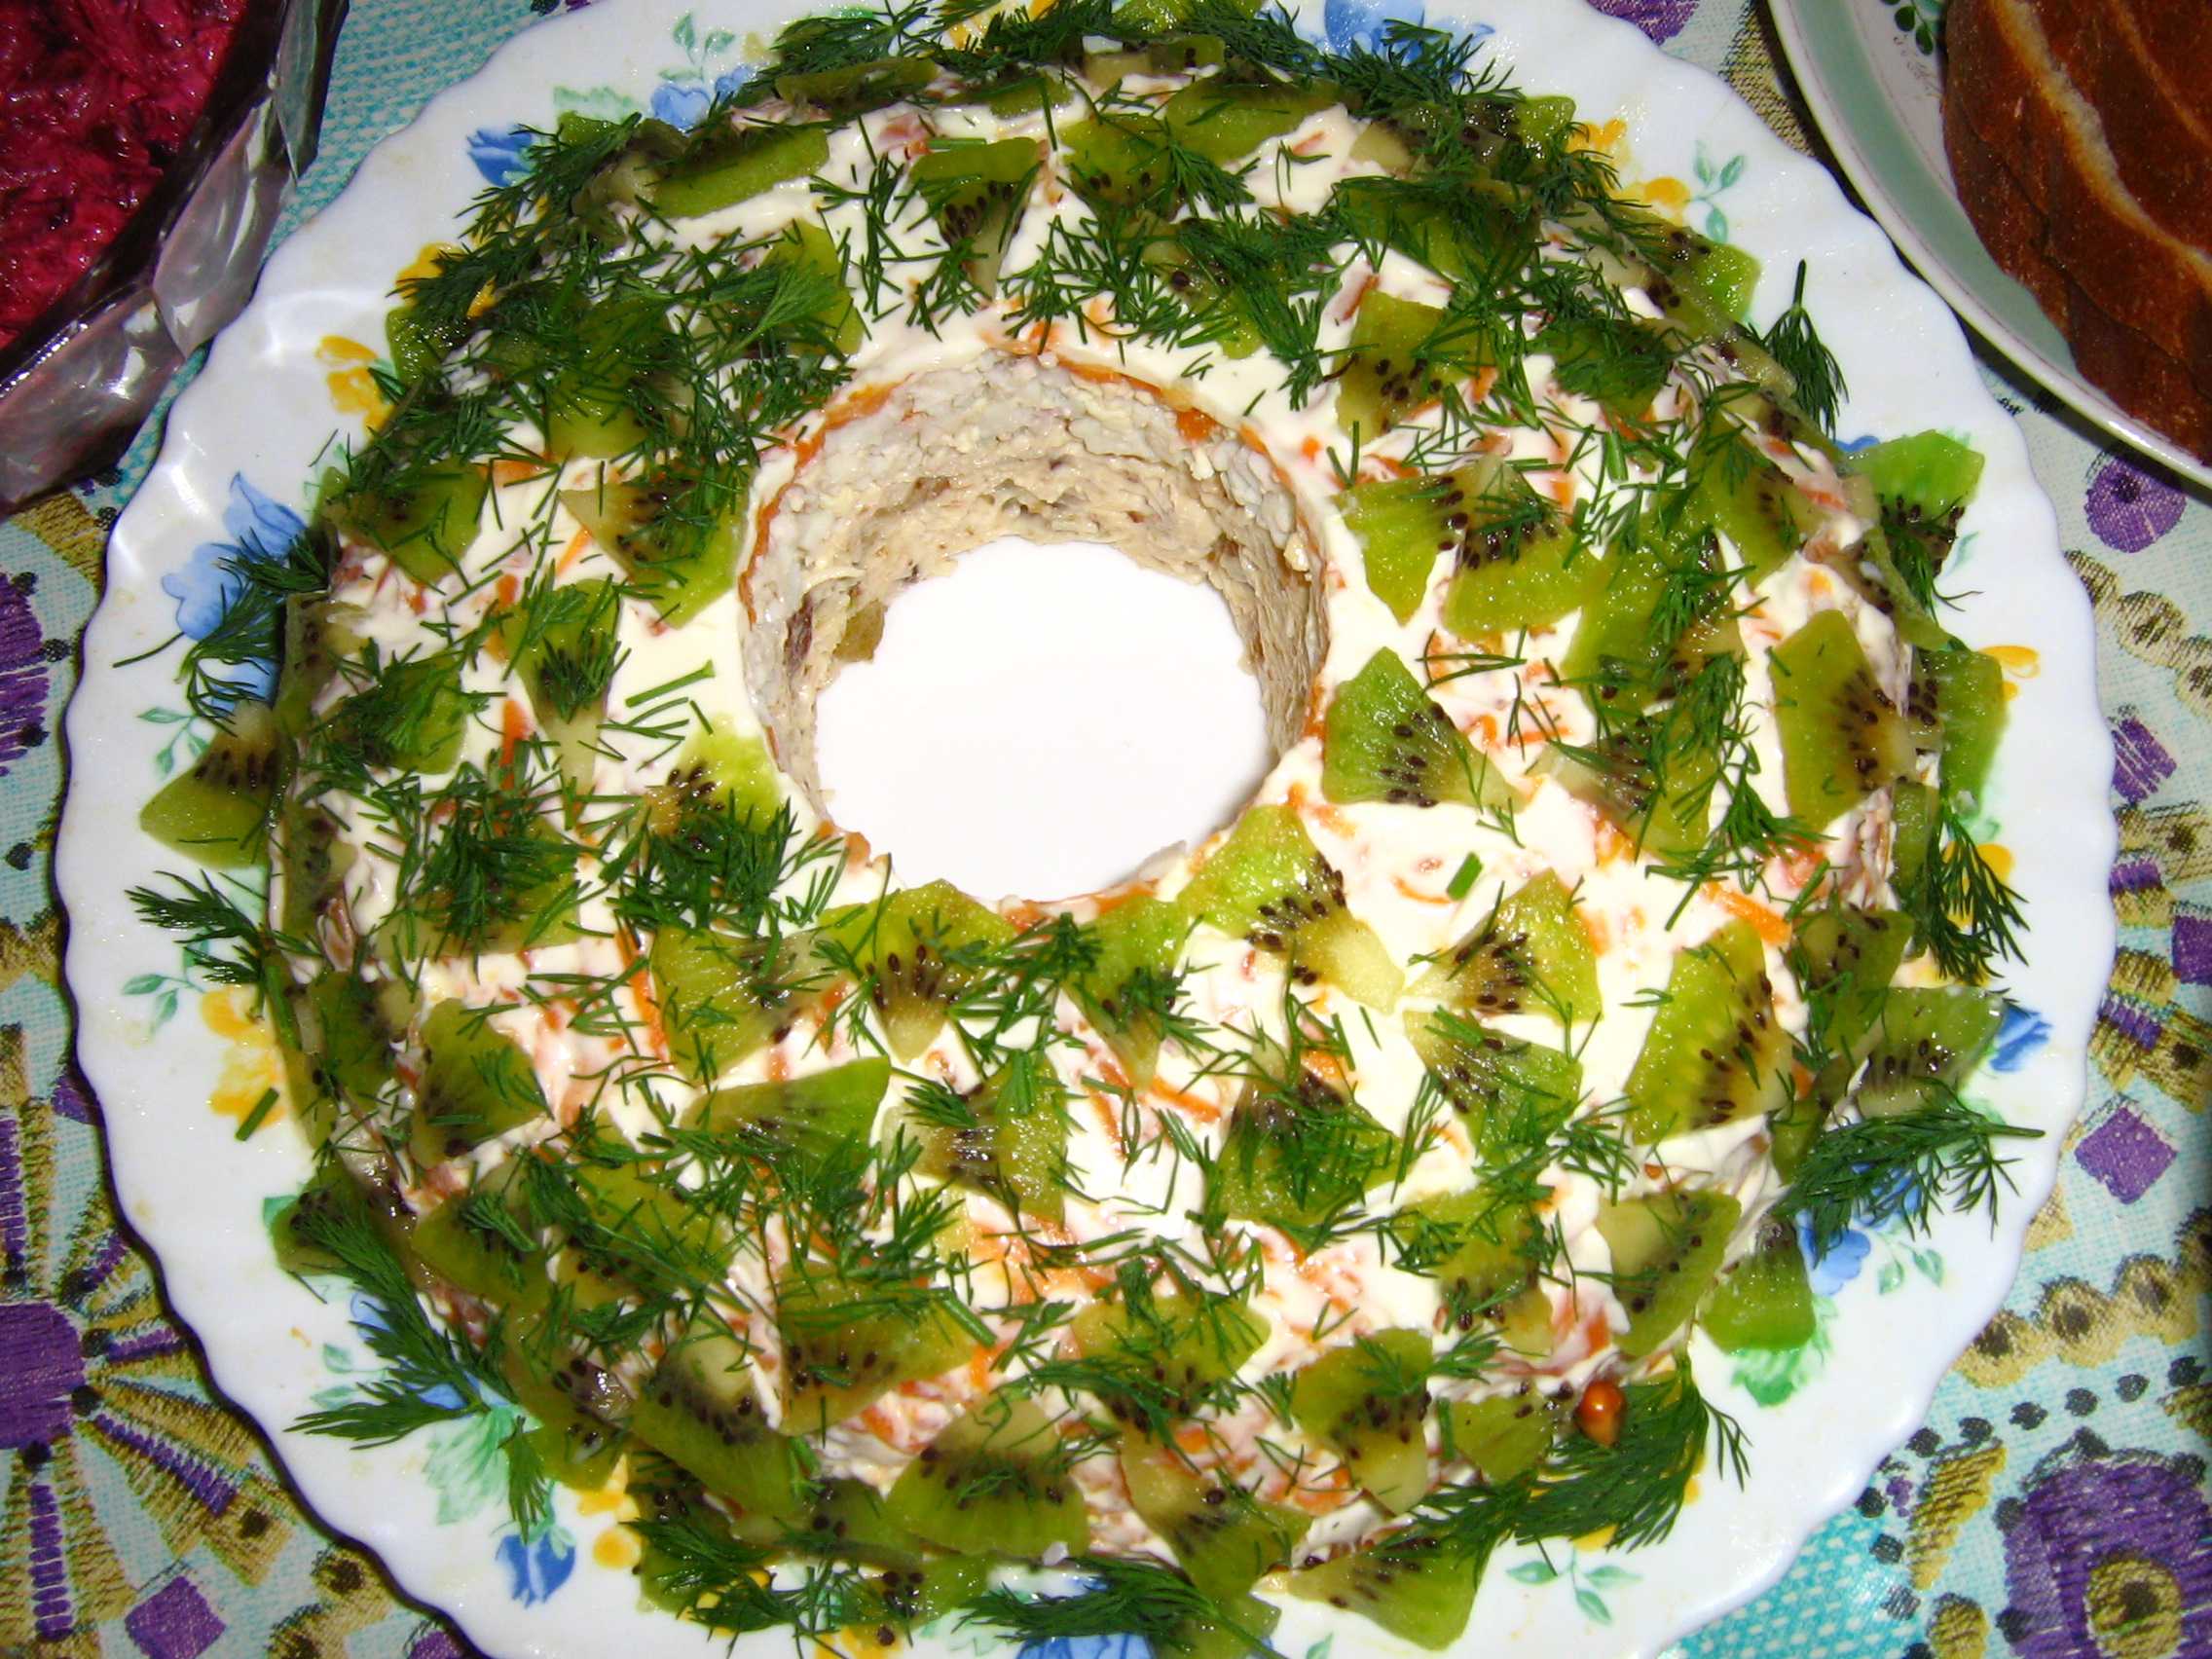 Малахитовый браслет салат рецепт с фото пошагово